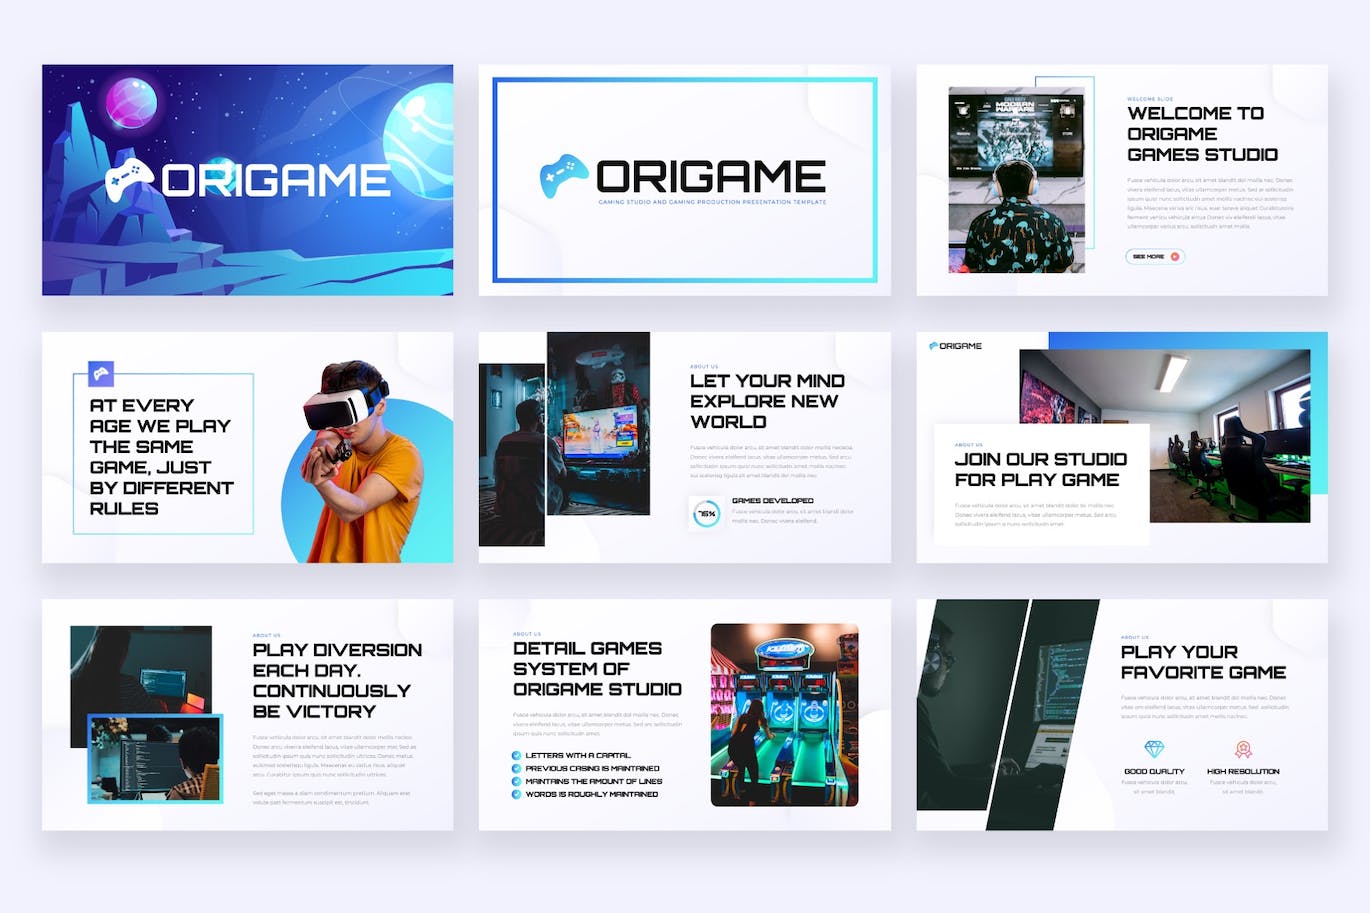 游戏制作工作室PPT模板下载 ORIGAME – Gaming Studio Powerpoint Template 幻灯图表 第6张